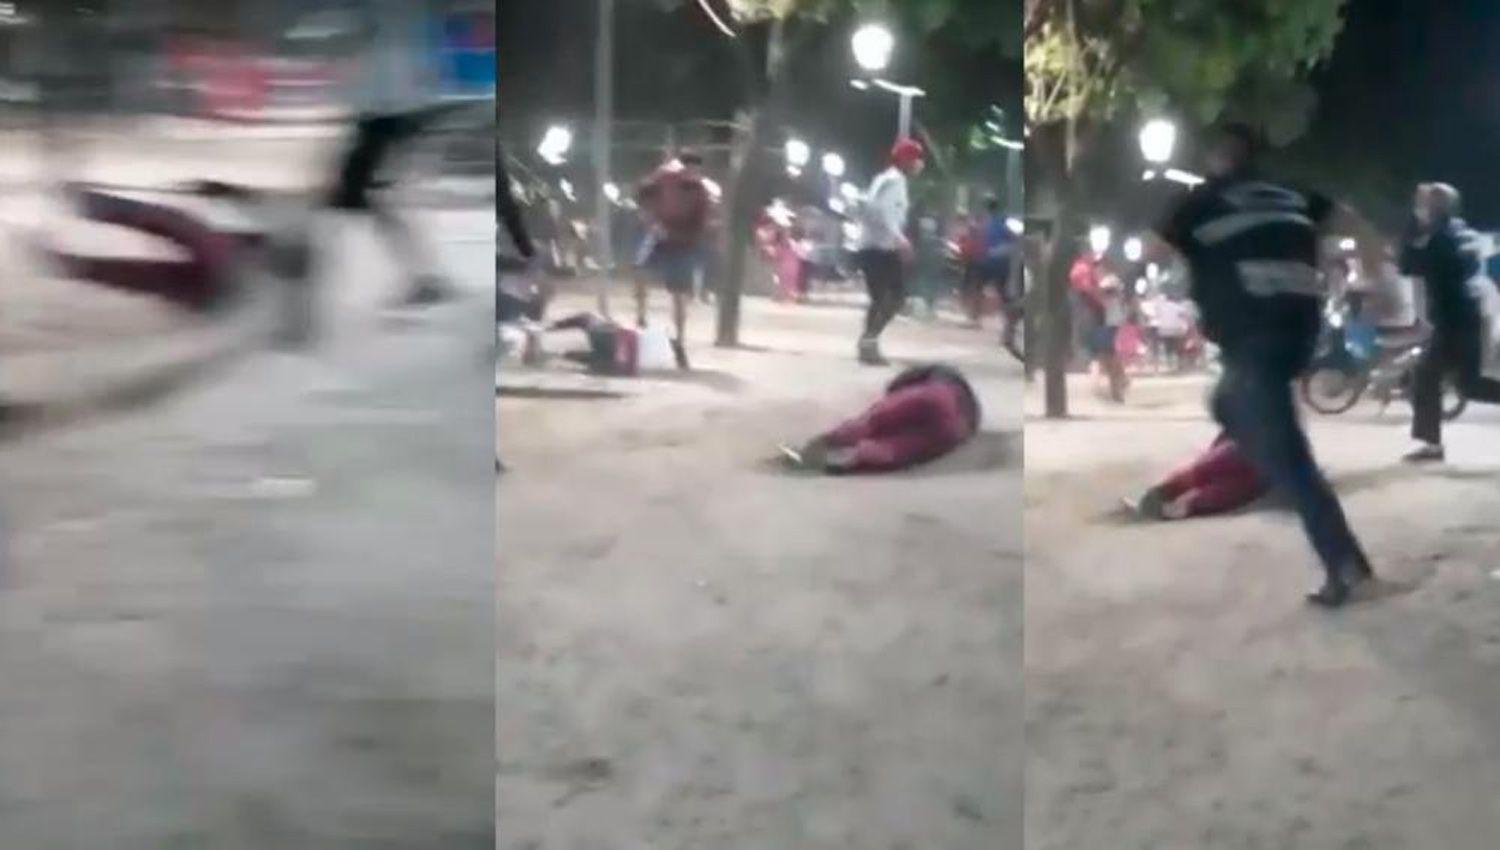 Joacutevenes protagonizaron peleas y ocasionaron dantildeos en la Plaza Belgrano